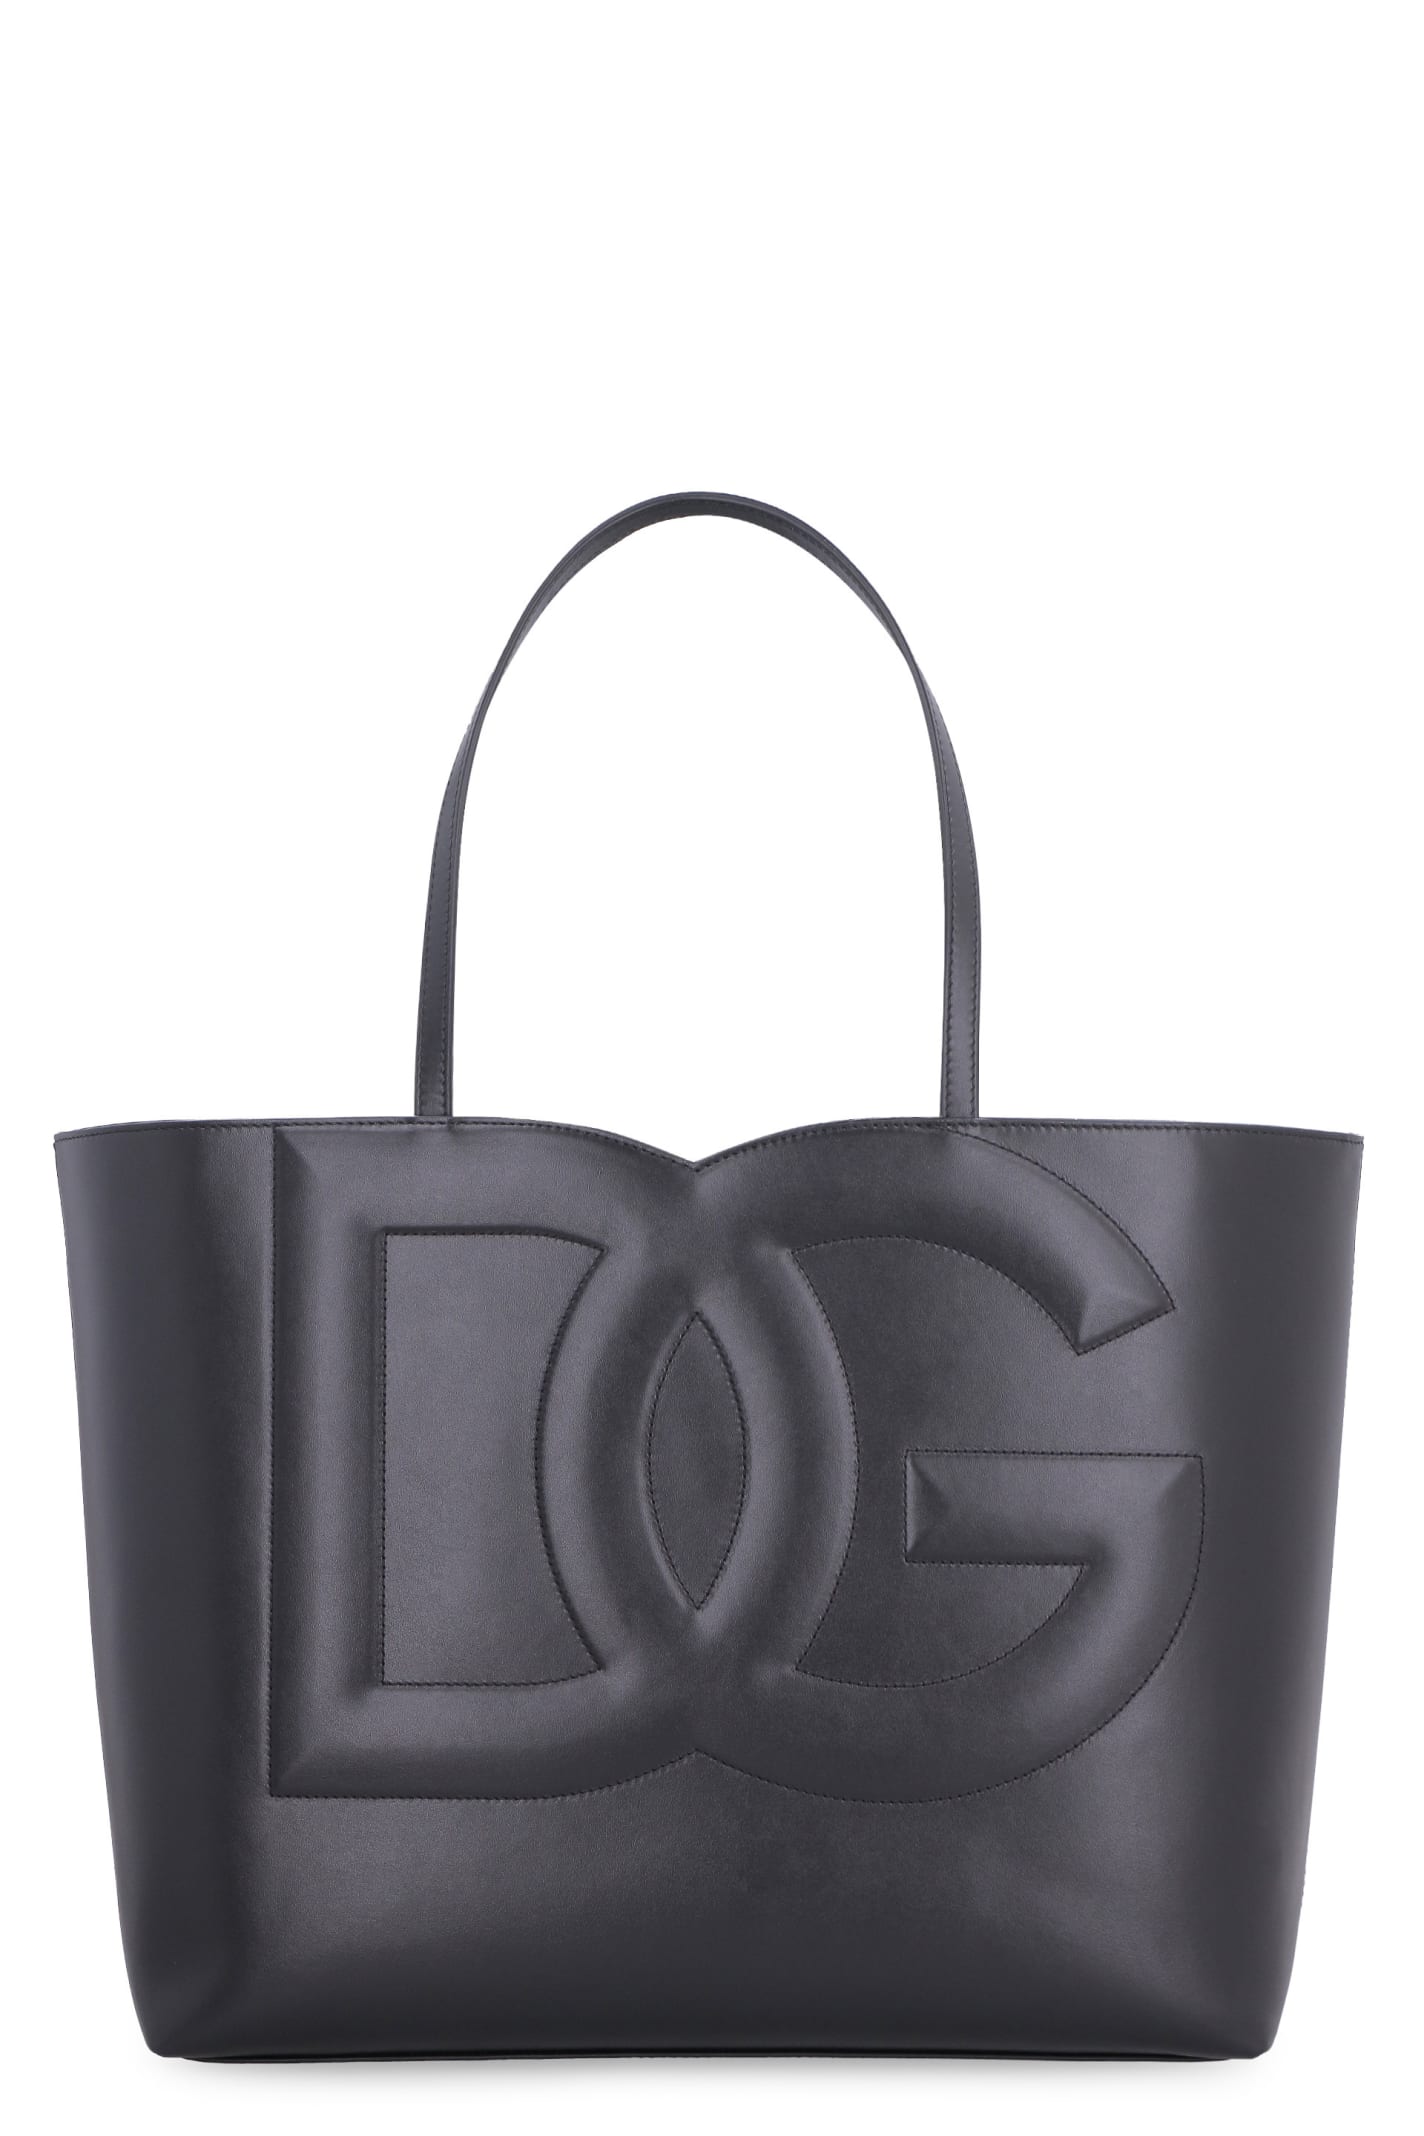 Dolce & Gabbana Dg Logo Leather Tote Bag In Black